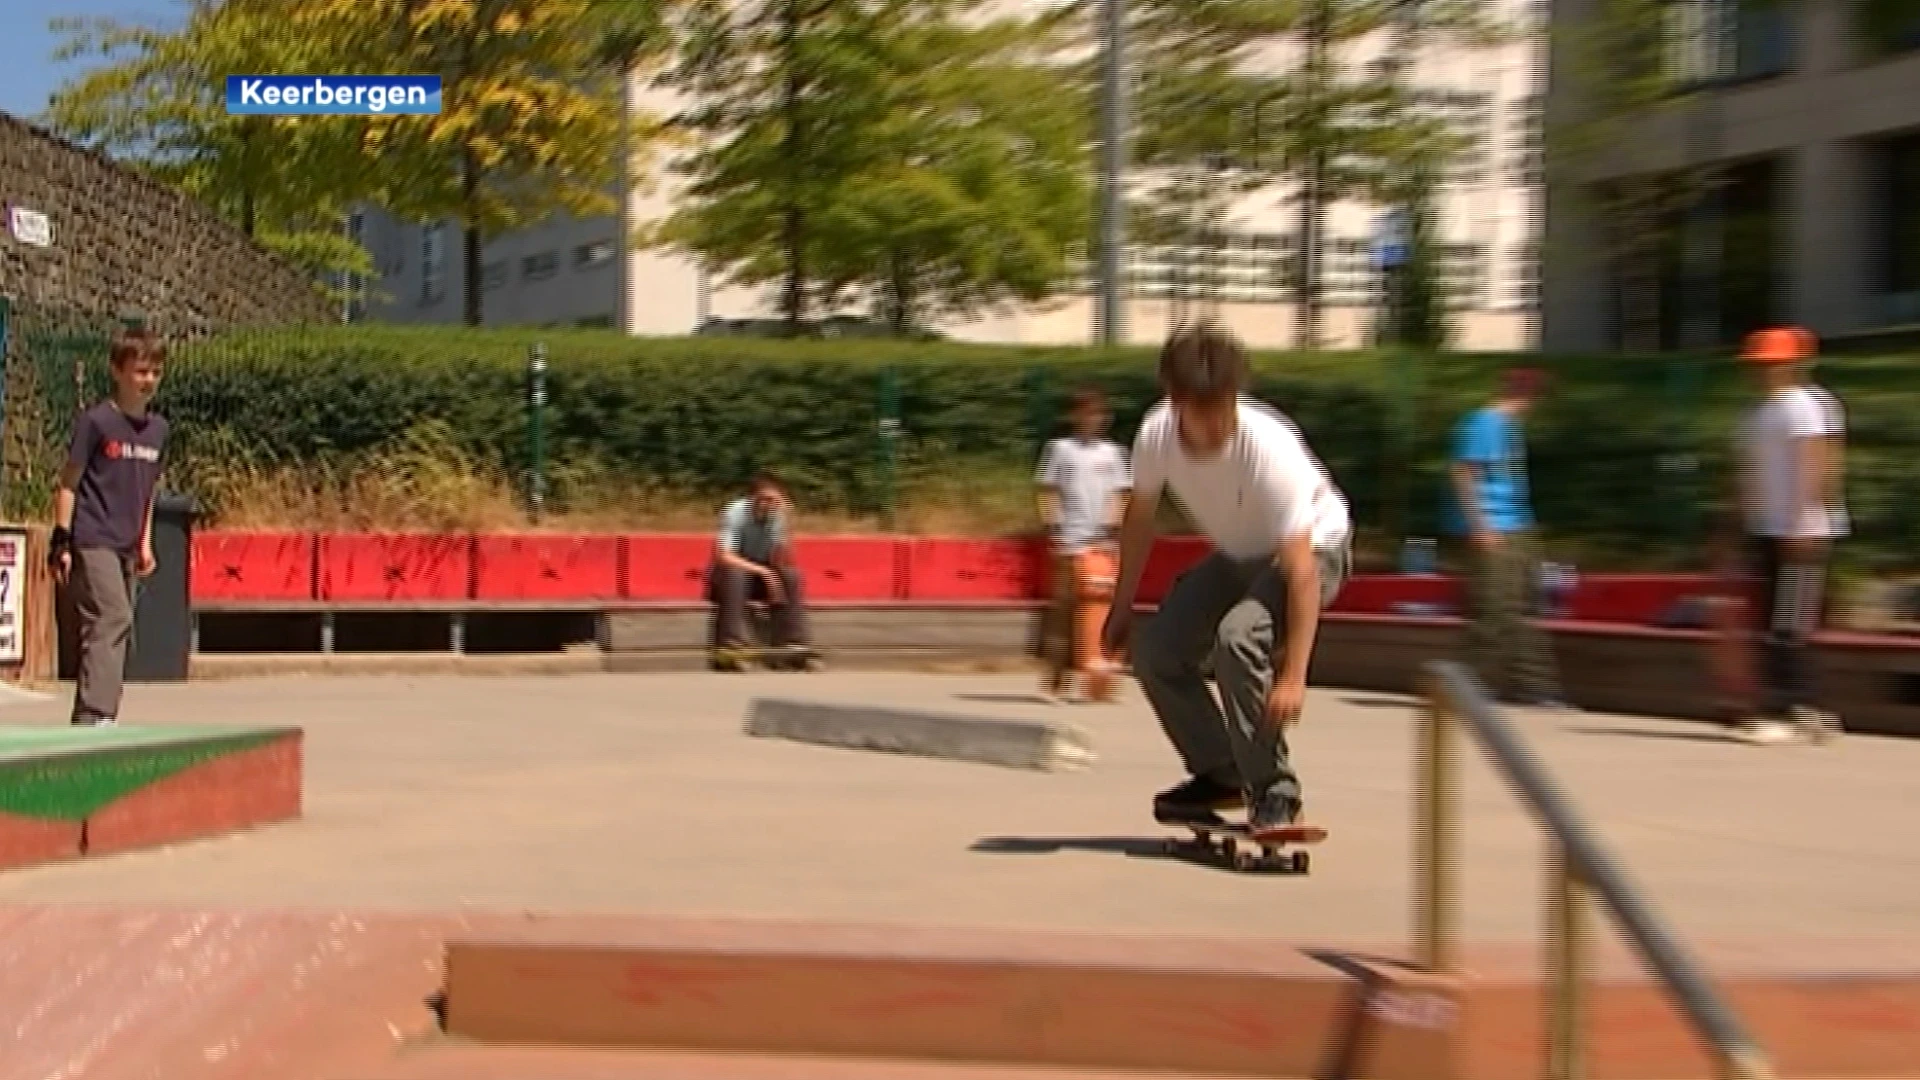 Keerbergen krijgt pop-up skatepark aan de sporthal